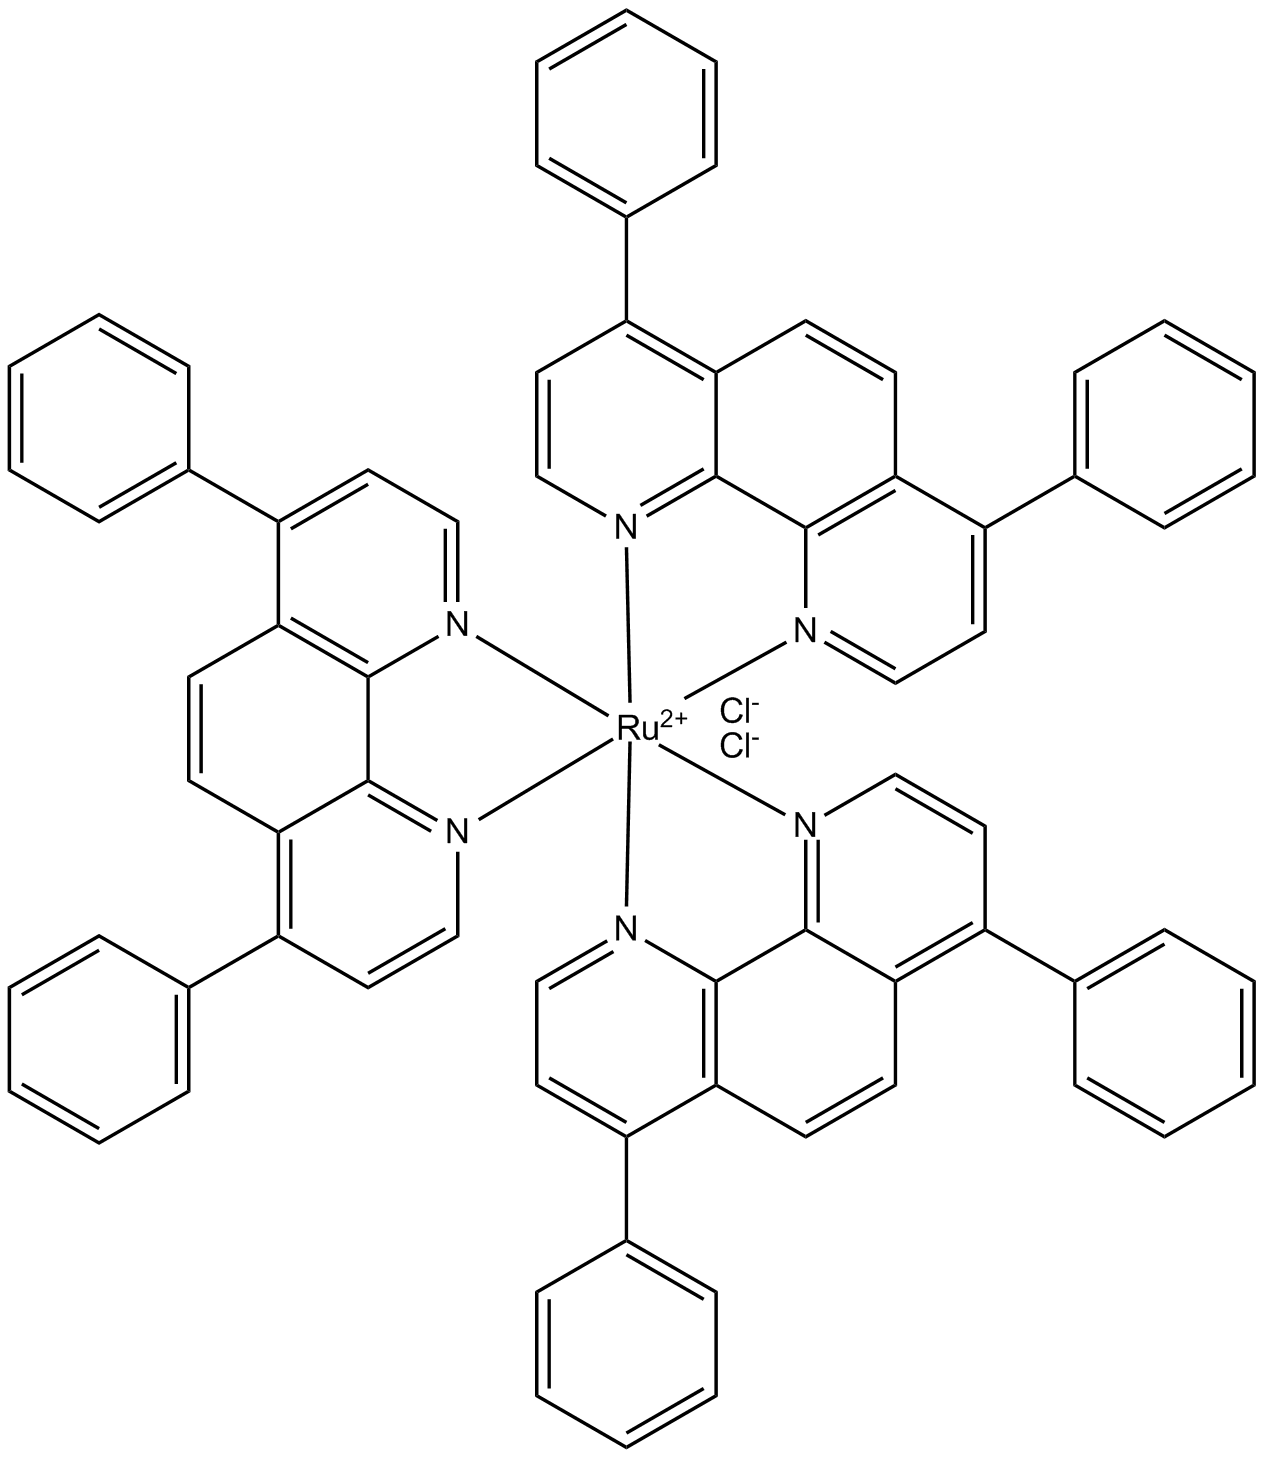 Tris(4,7-diphenyl-1,10-phenanthroline)ruthenium II dichloride complex